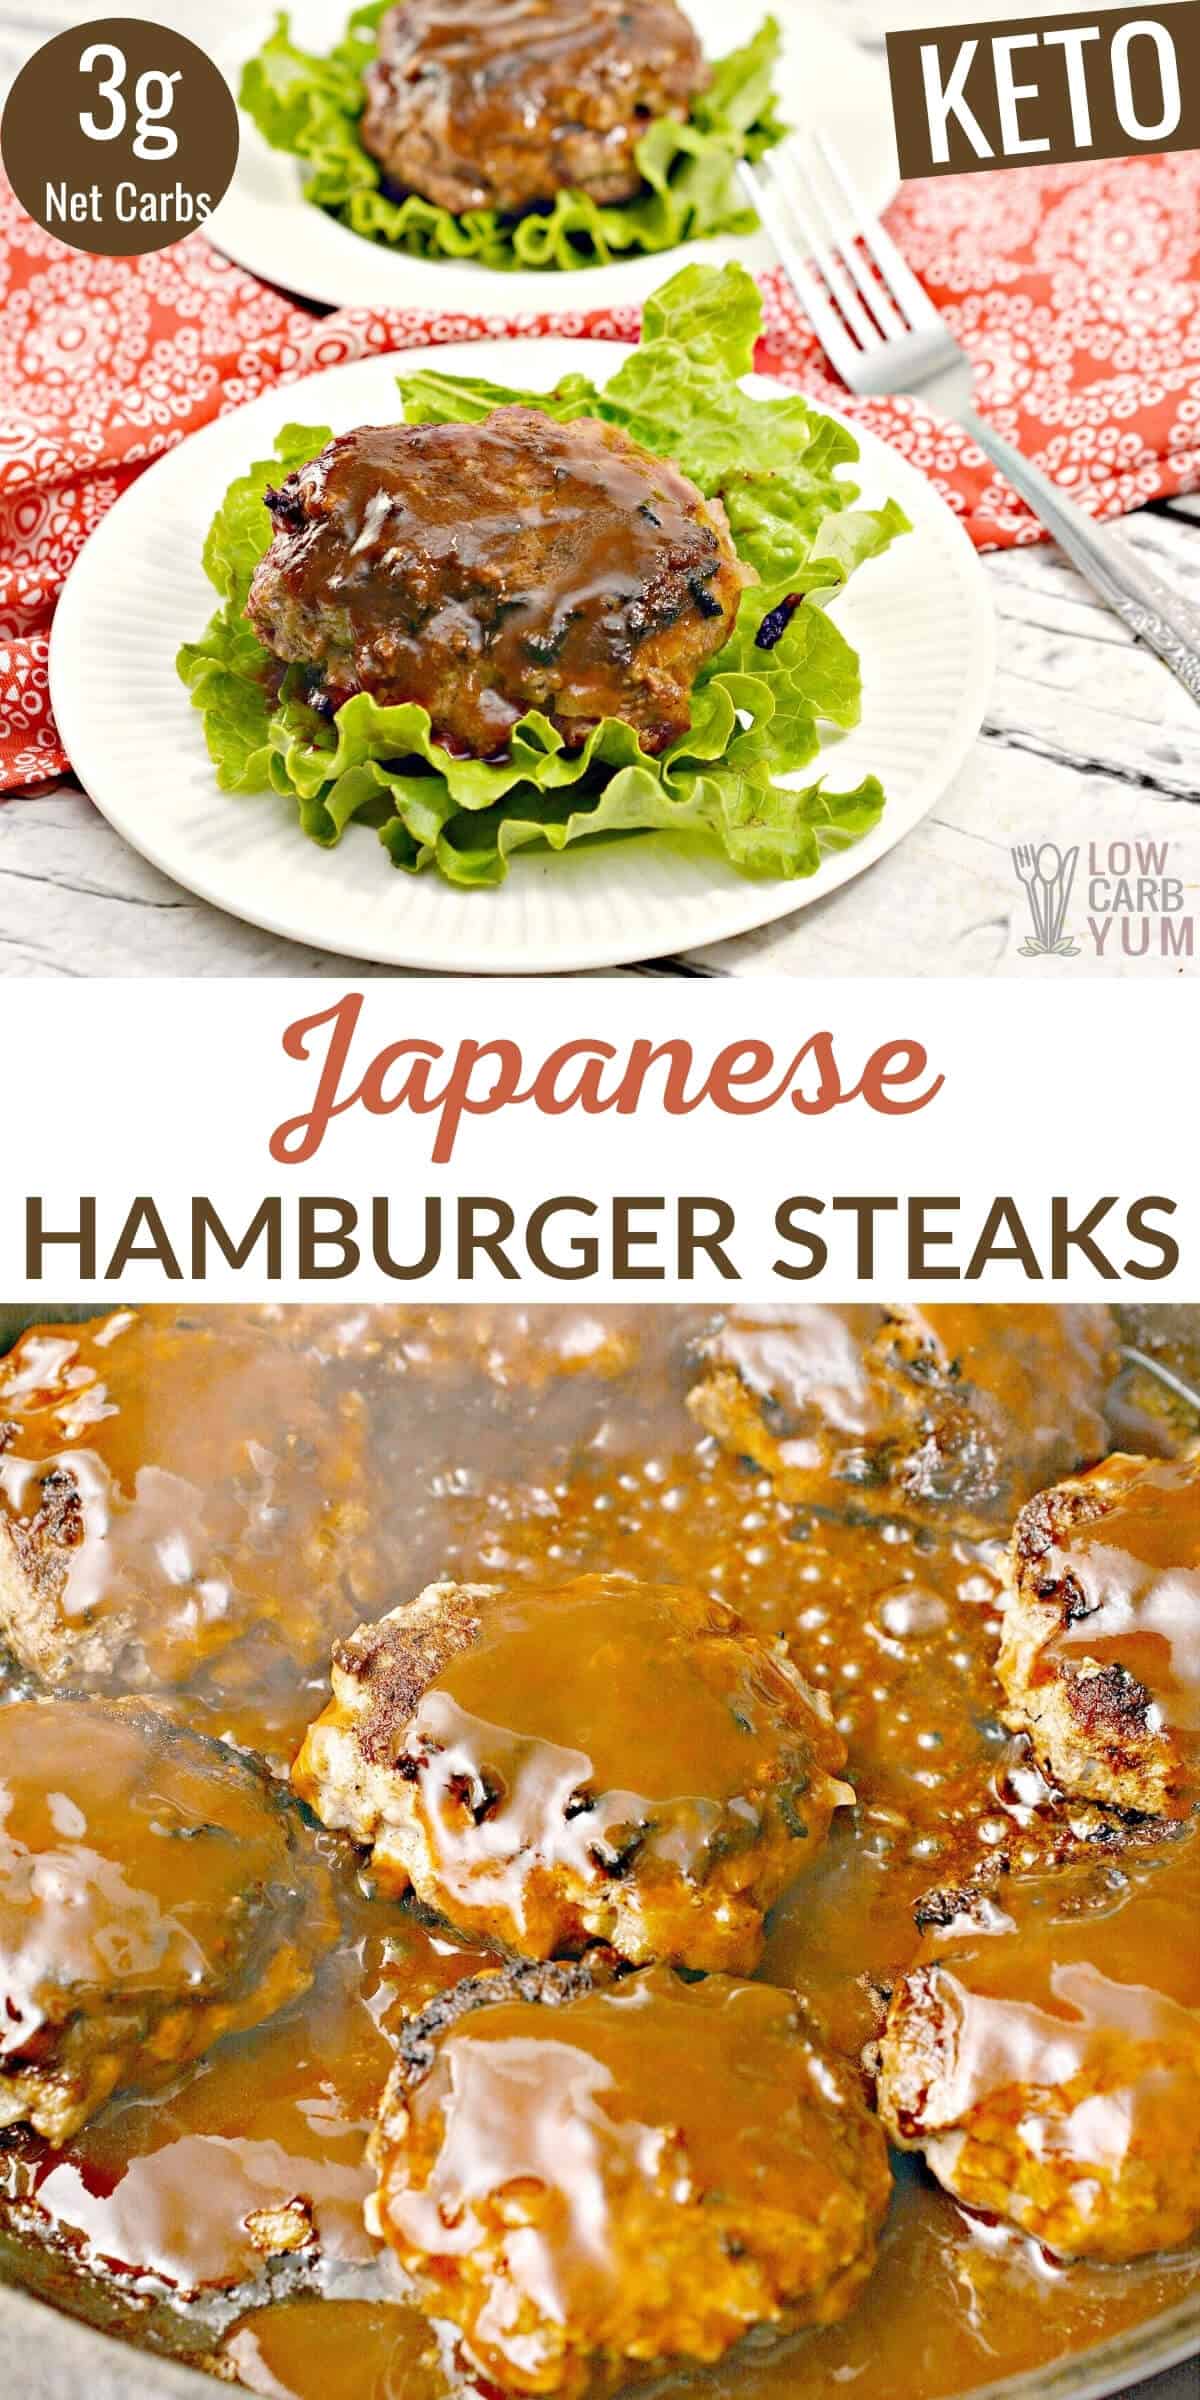 keto japanese hamburger steak recipe